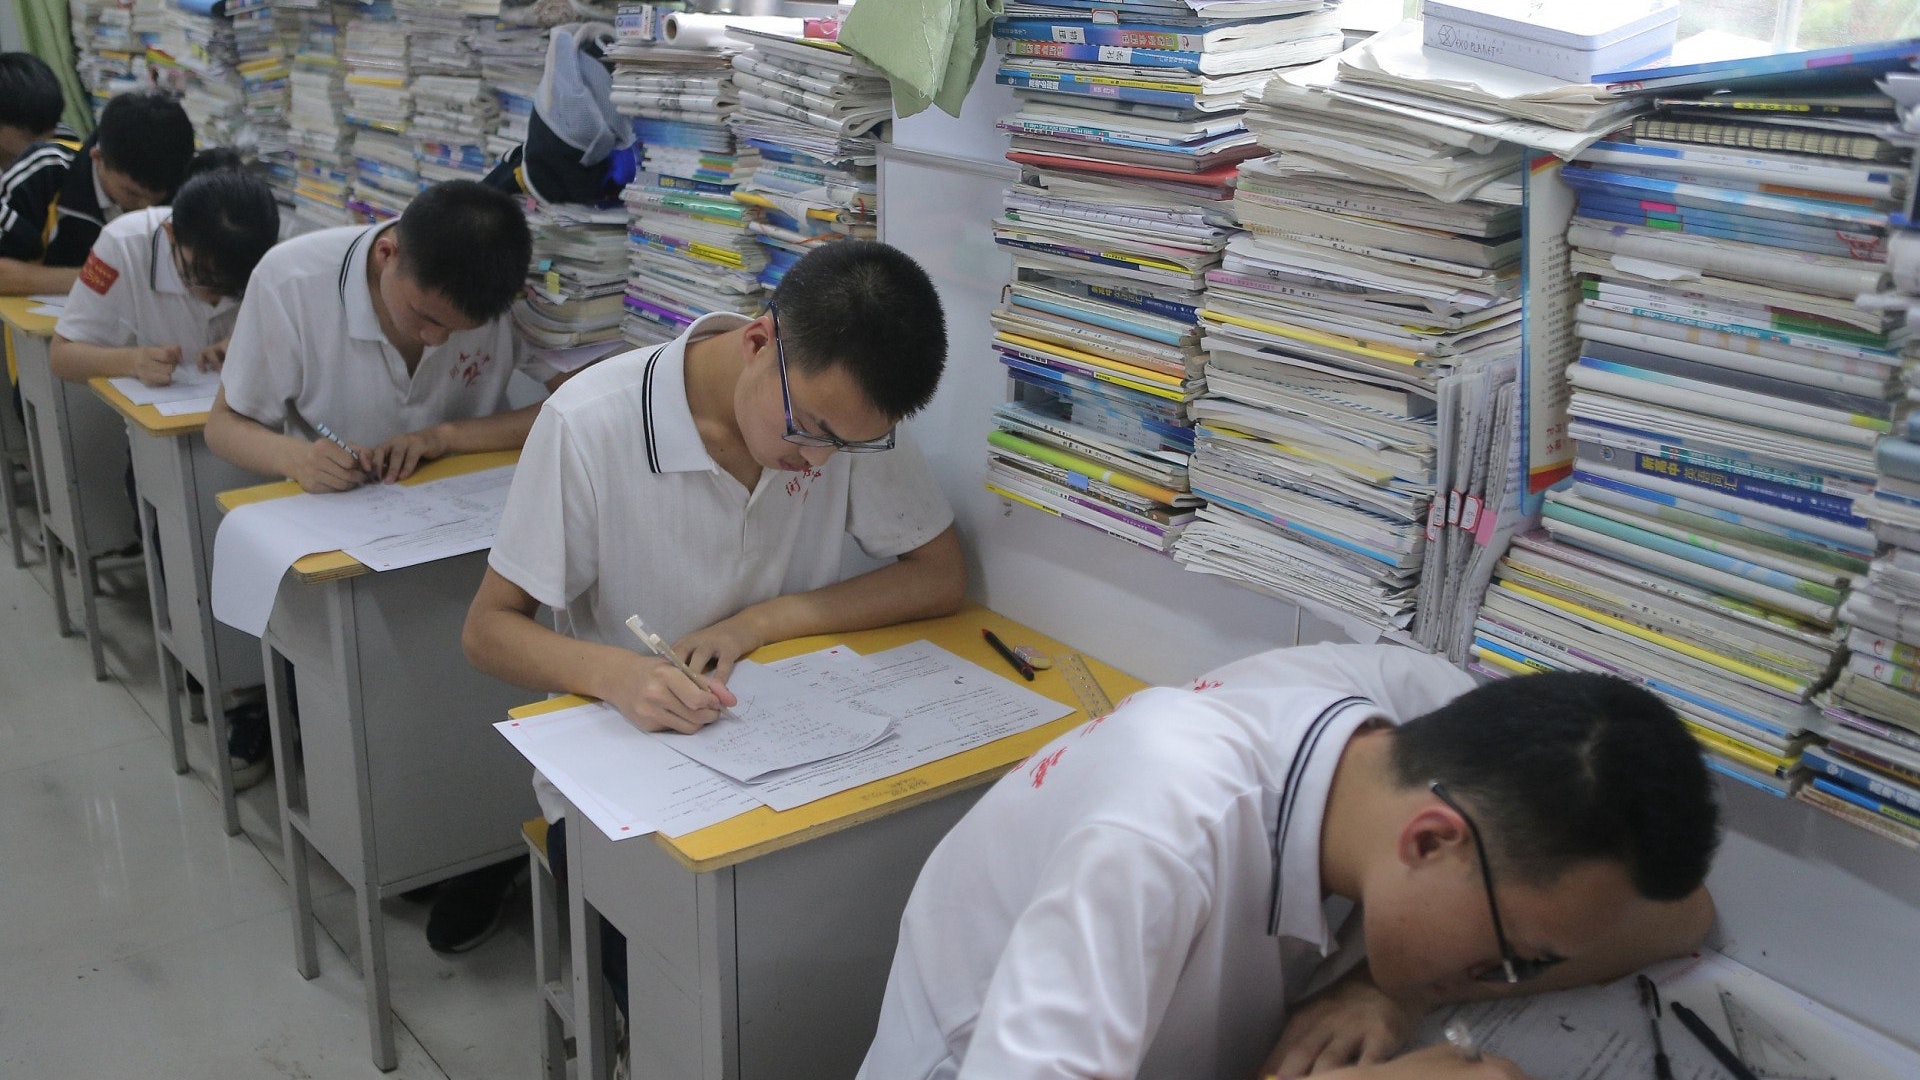 Hằng năm, đề thi Văn tại Trung Quốc luôn được đánh giá có độ khó rất cao